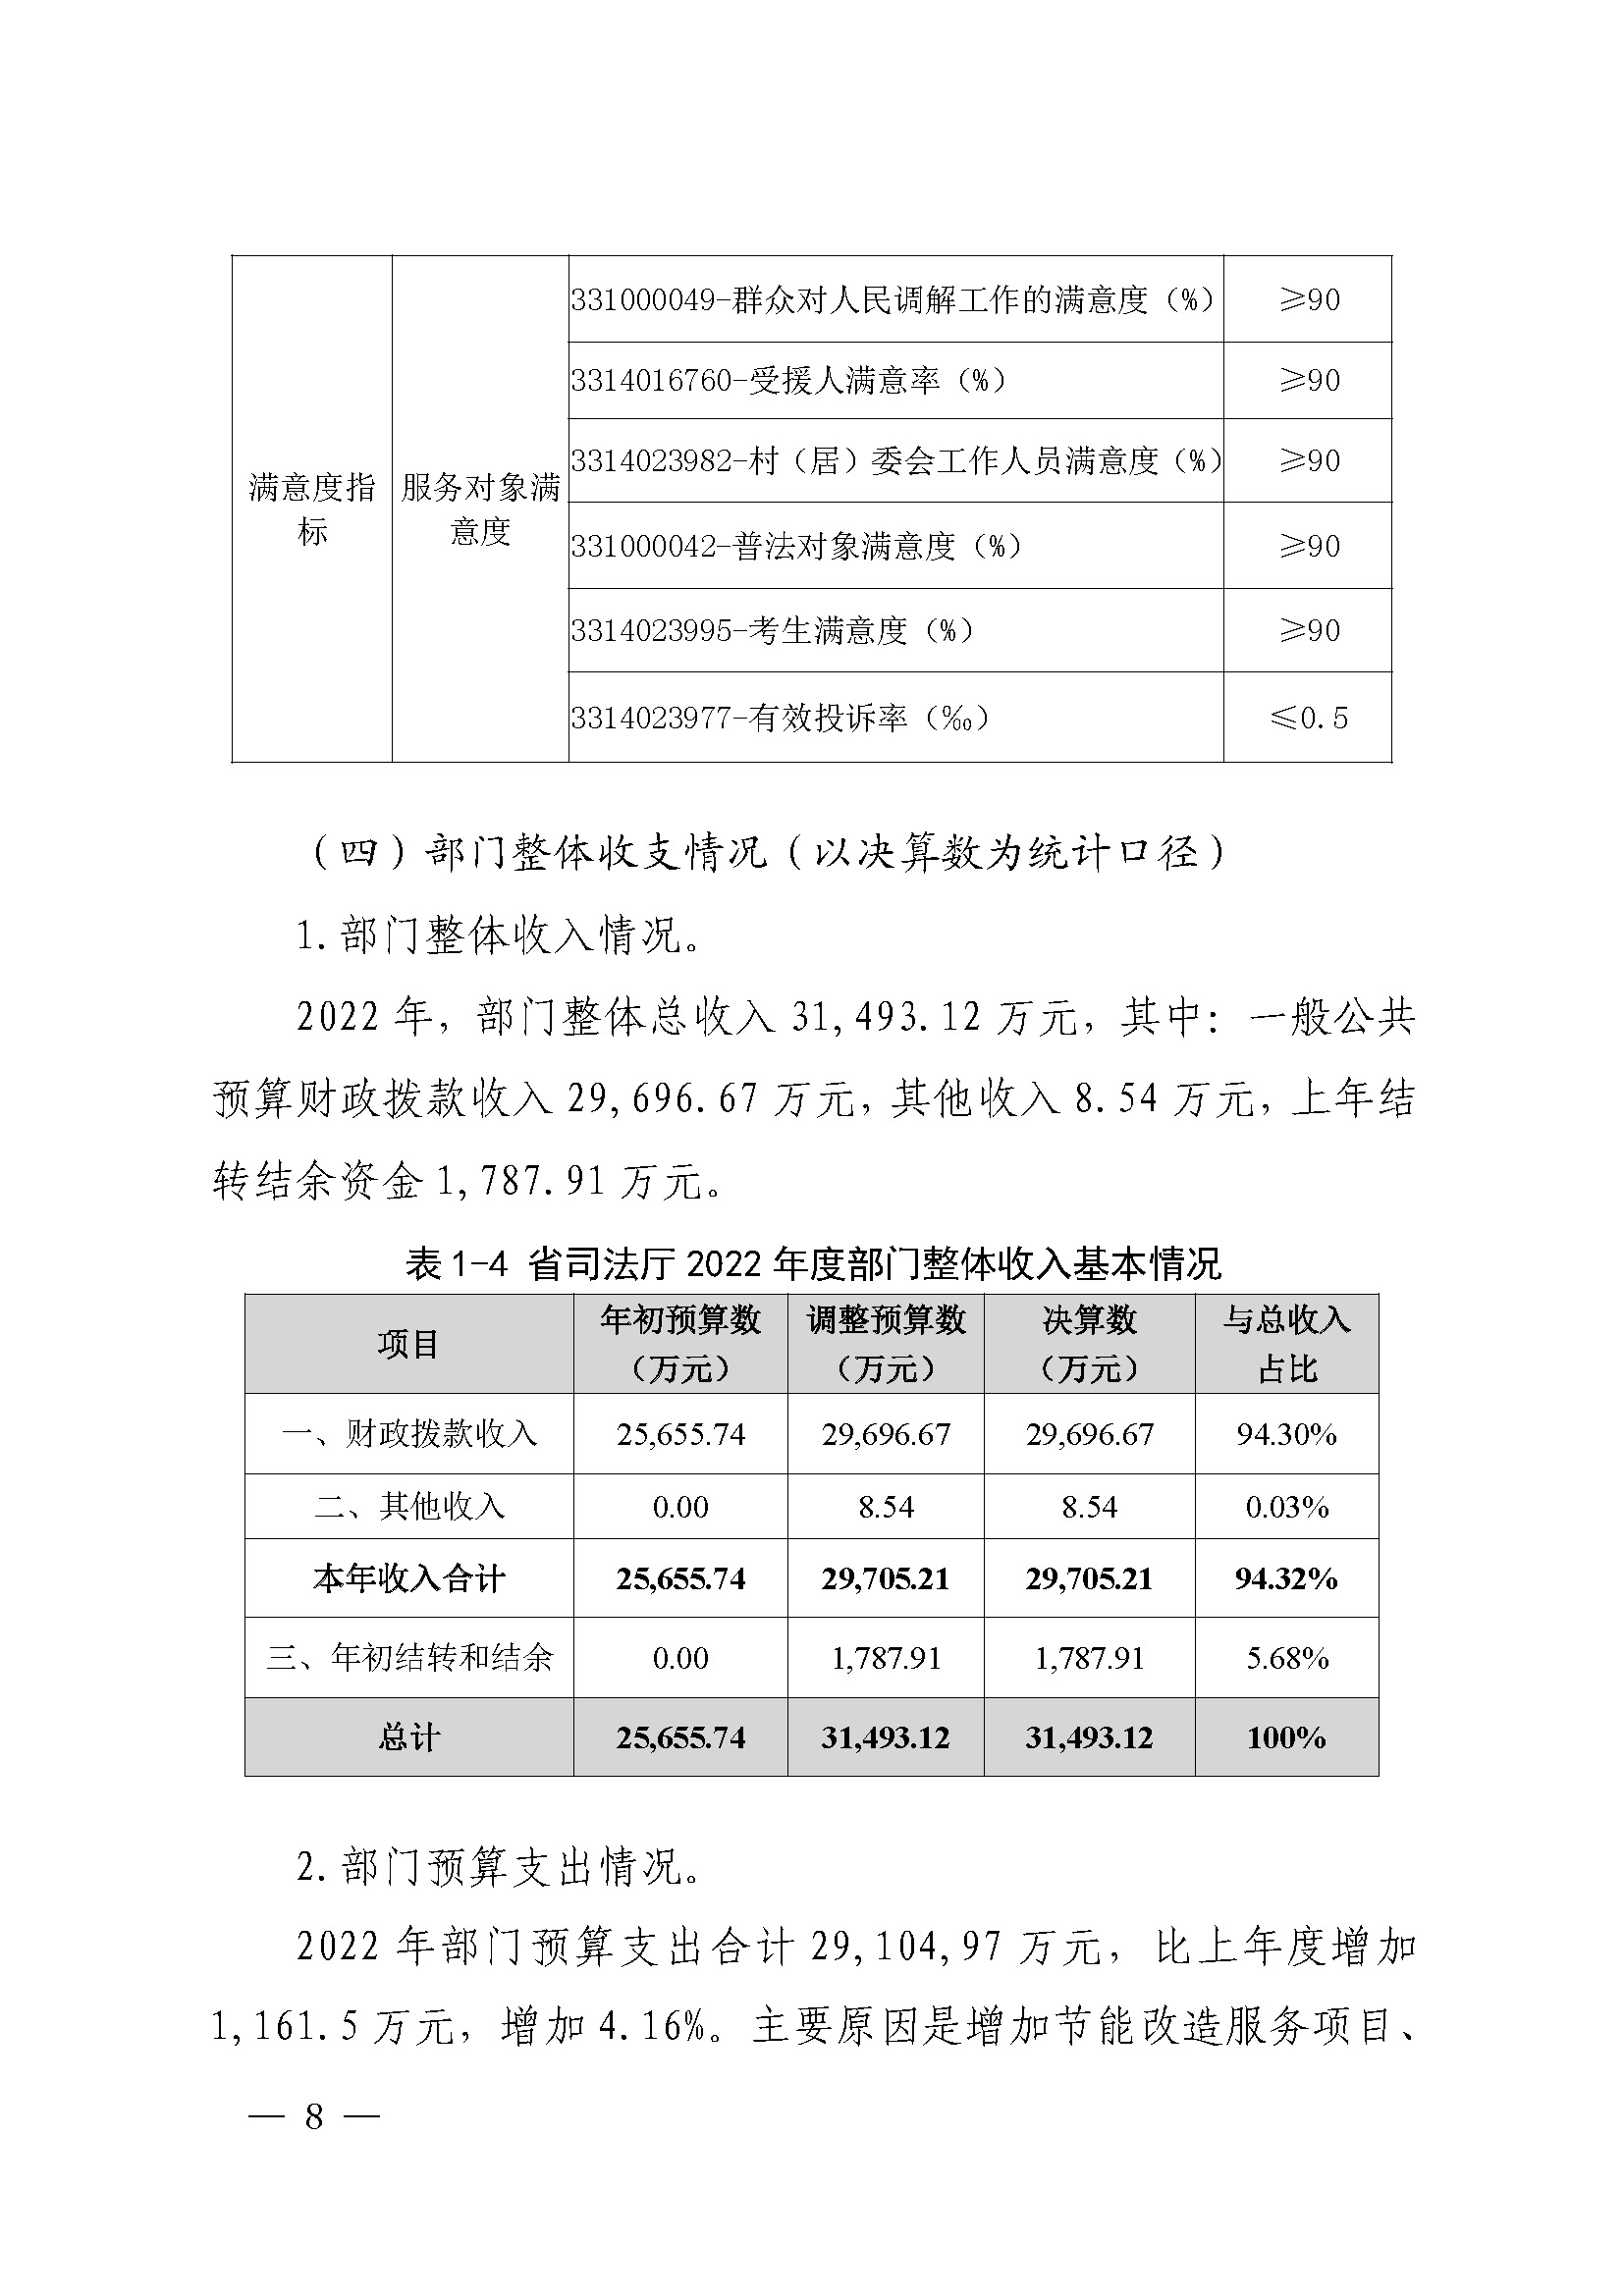 广东省司法厅2022年度部门整体支出绩效自评报告_页面_08.jpg